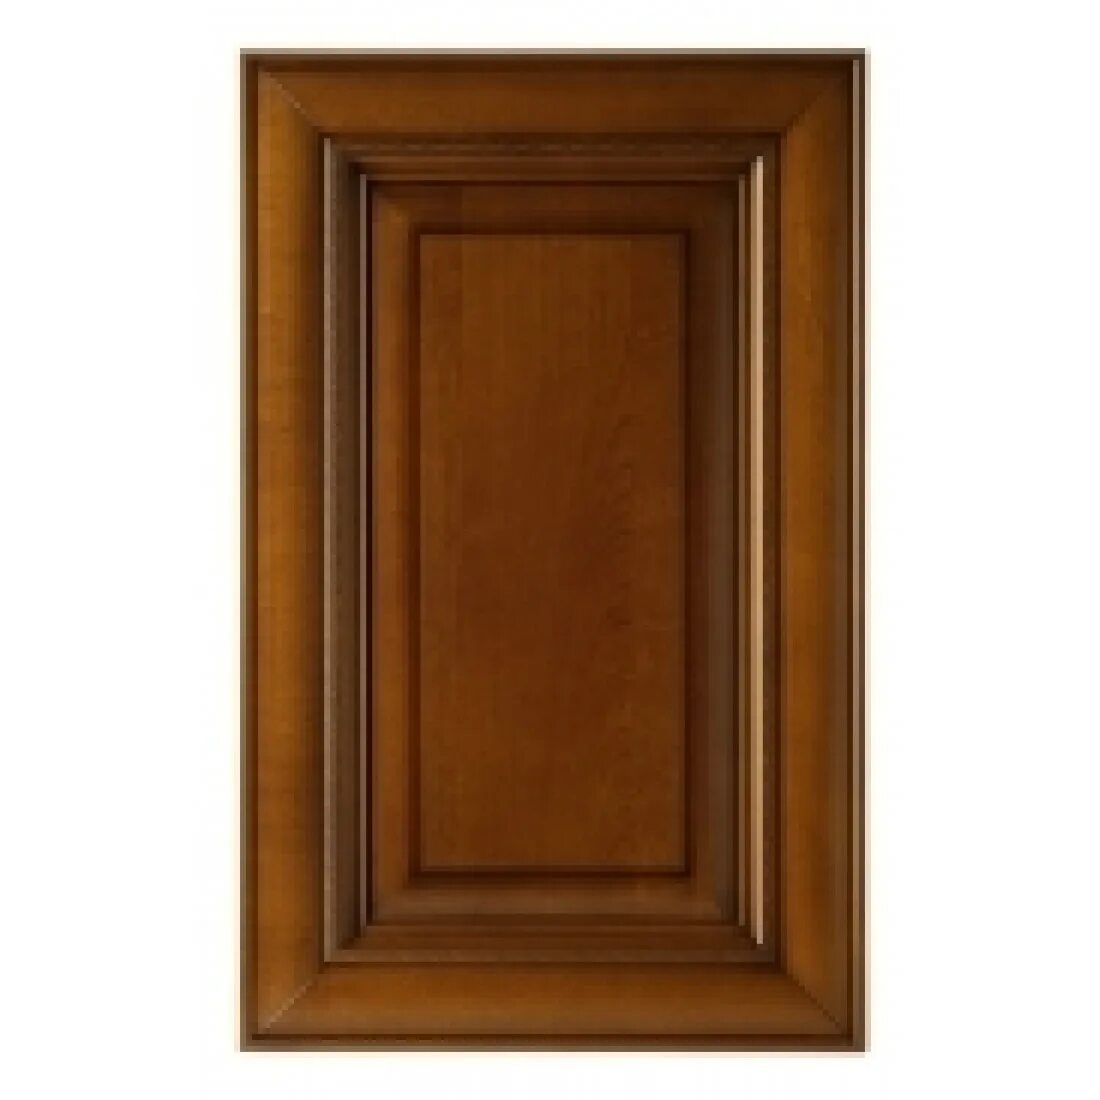 Фасады 45 см. Дверь для шкафа Прованс 45х70 см массив дерева цвет коричневый. Бергонцо фасады. Фасады из массива дерева.